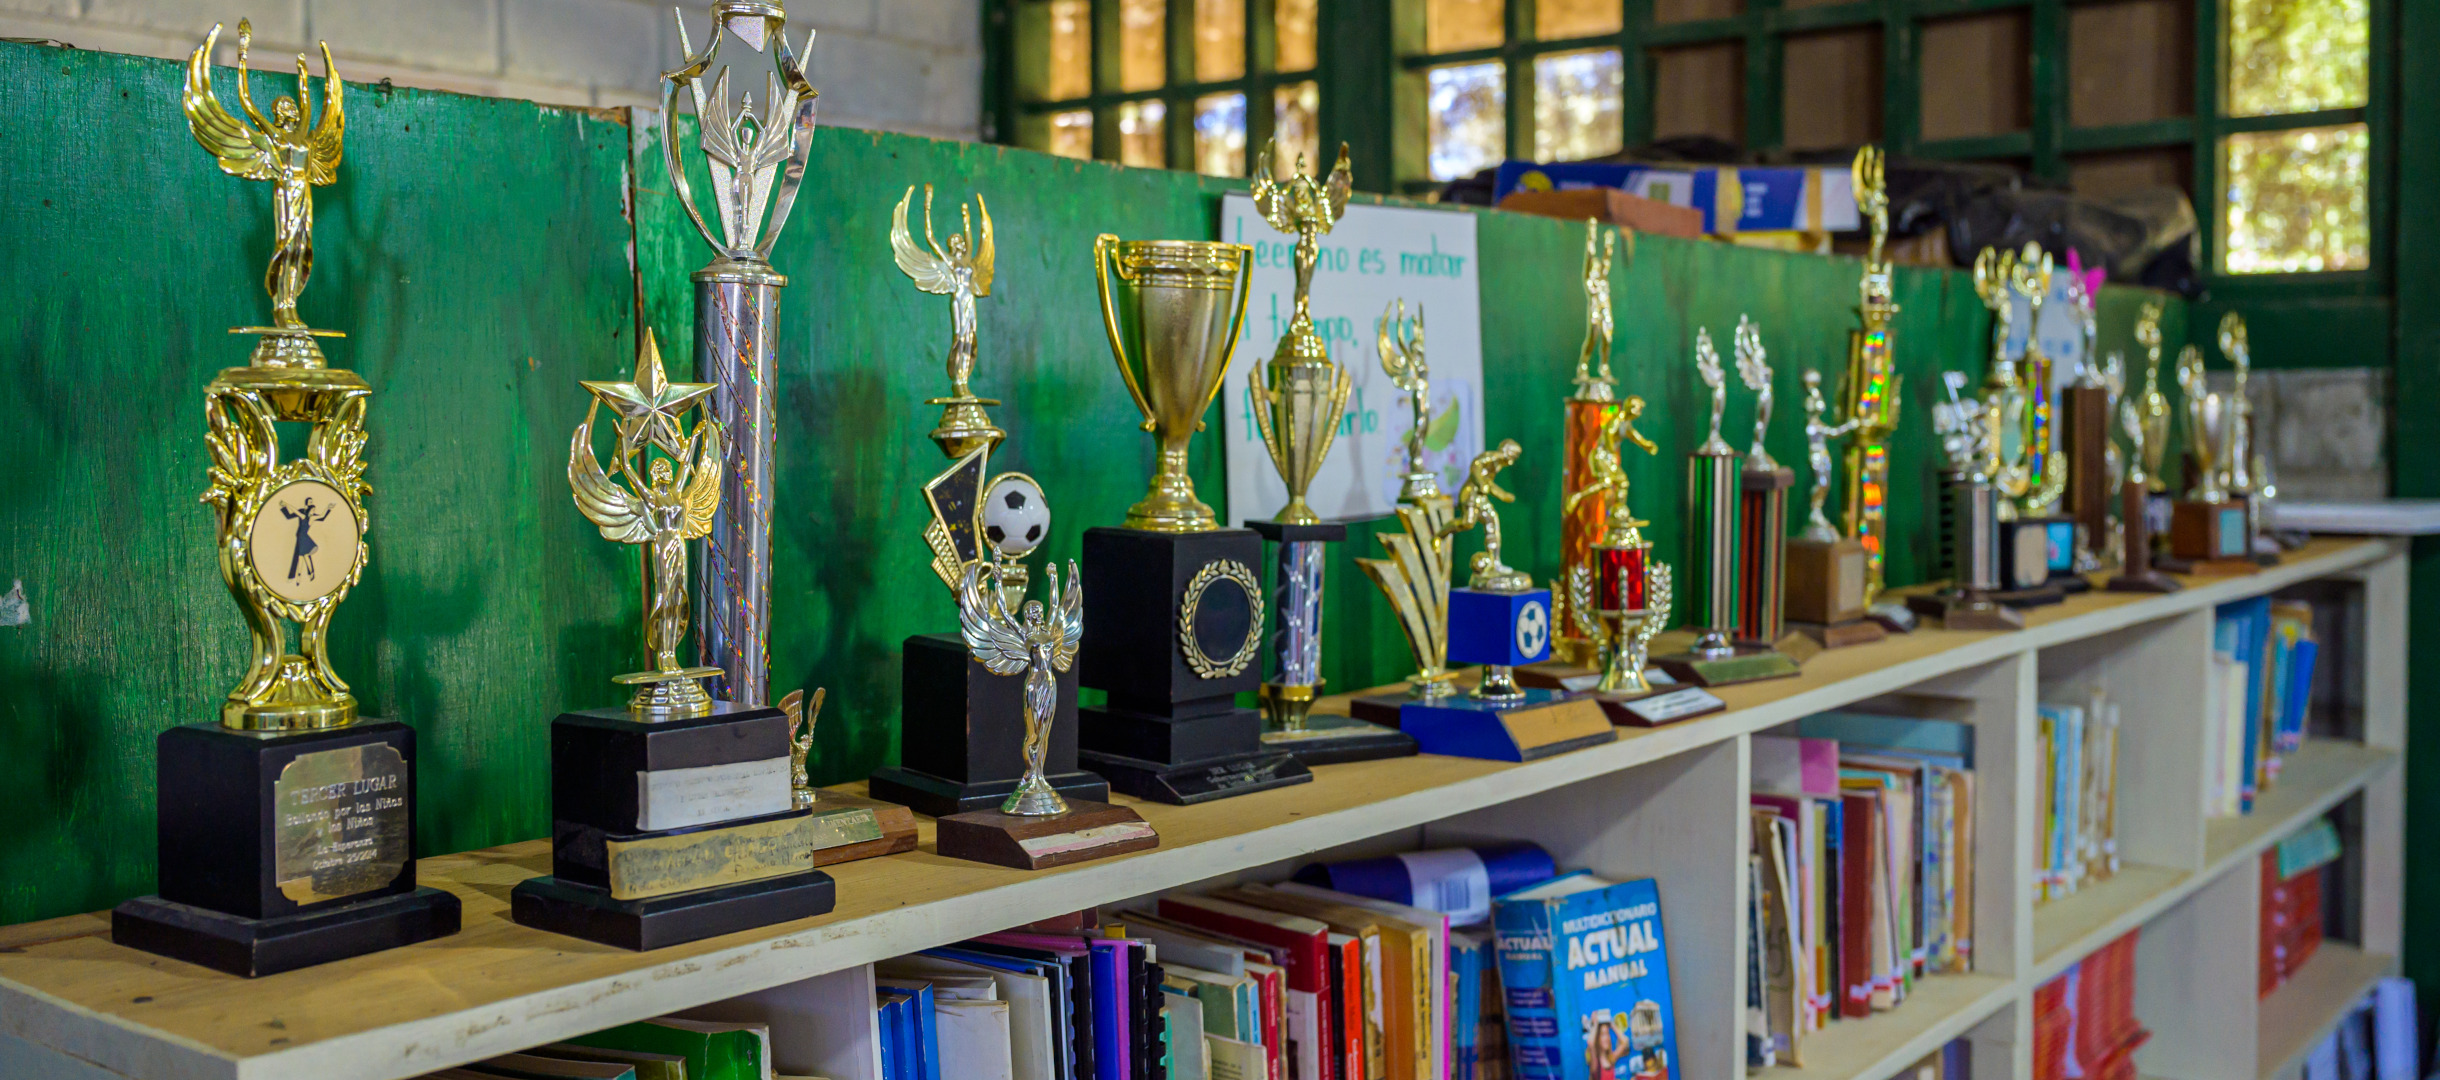 Auszeichnungen für Schüler werden in einer Schulbibliothek in Honduras ausgestellt